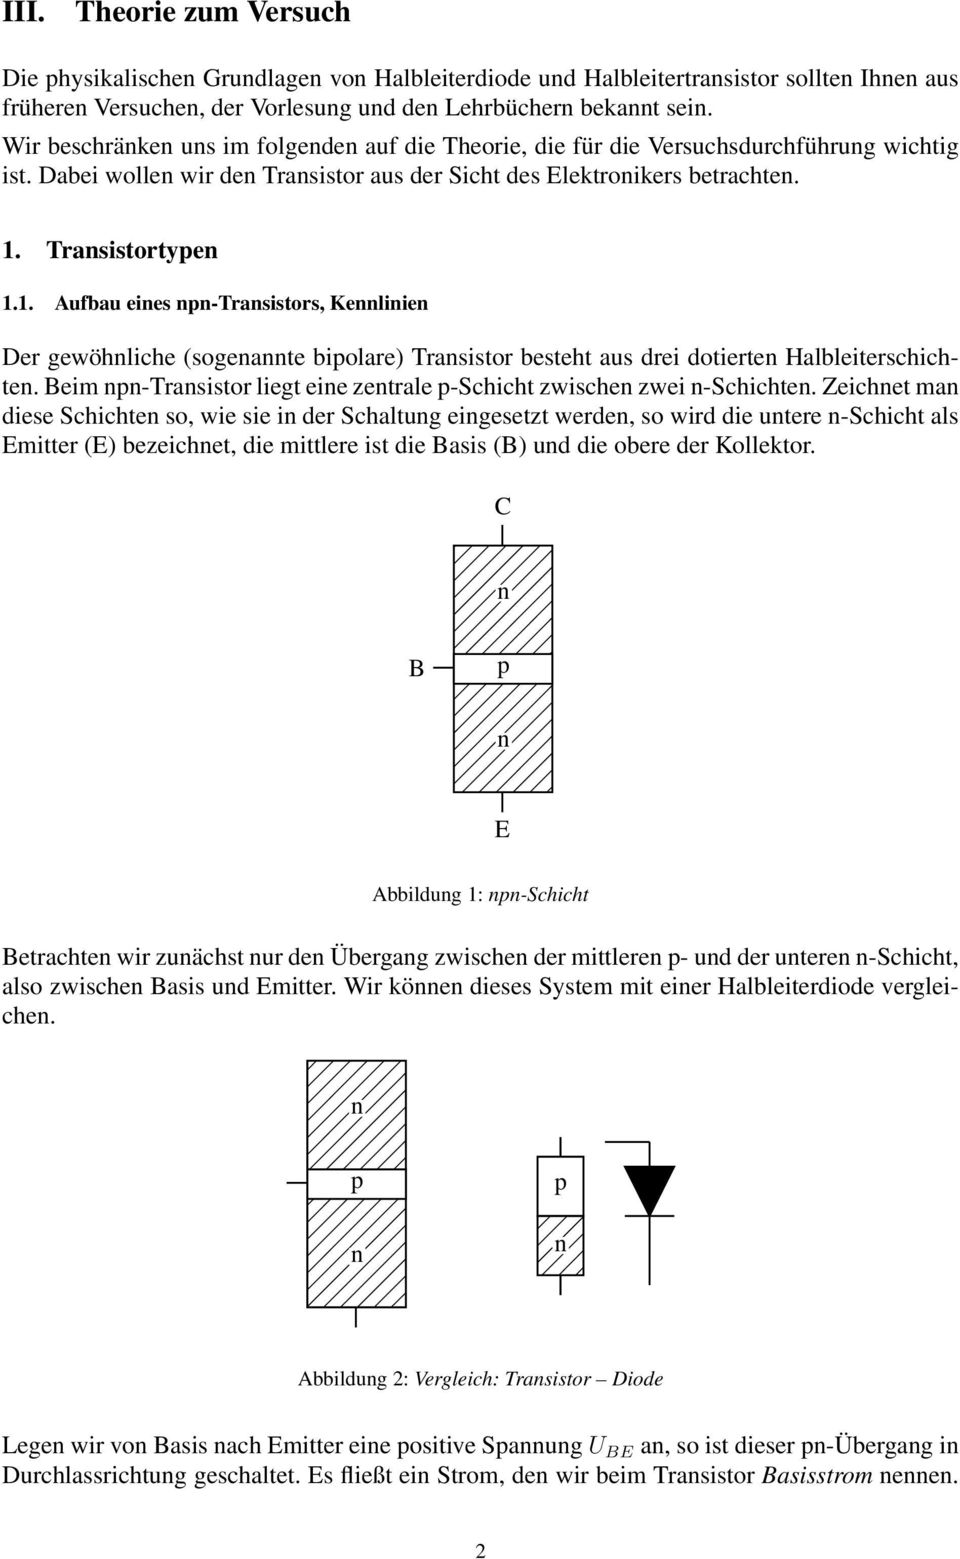 Trasistortye 1.1. Aufbau eies -Trasistors, Keliie Der gewöhliche (sogeate biolare) Trasistor besteht aus drei dotierte Halbleiterschichte.